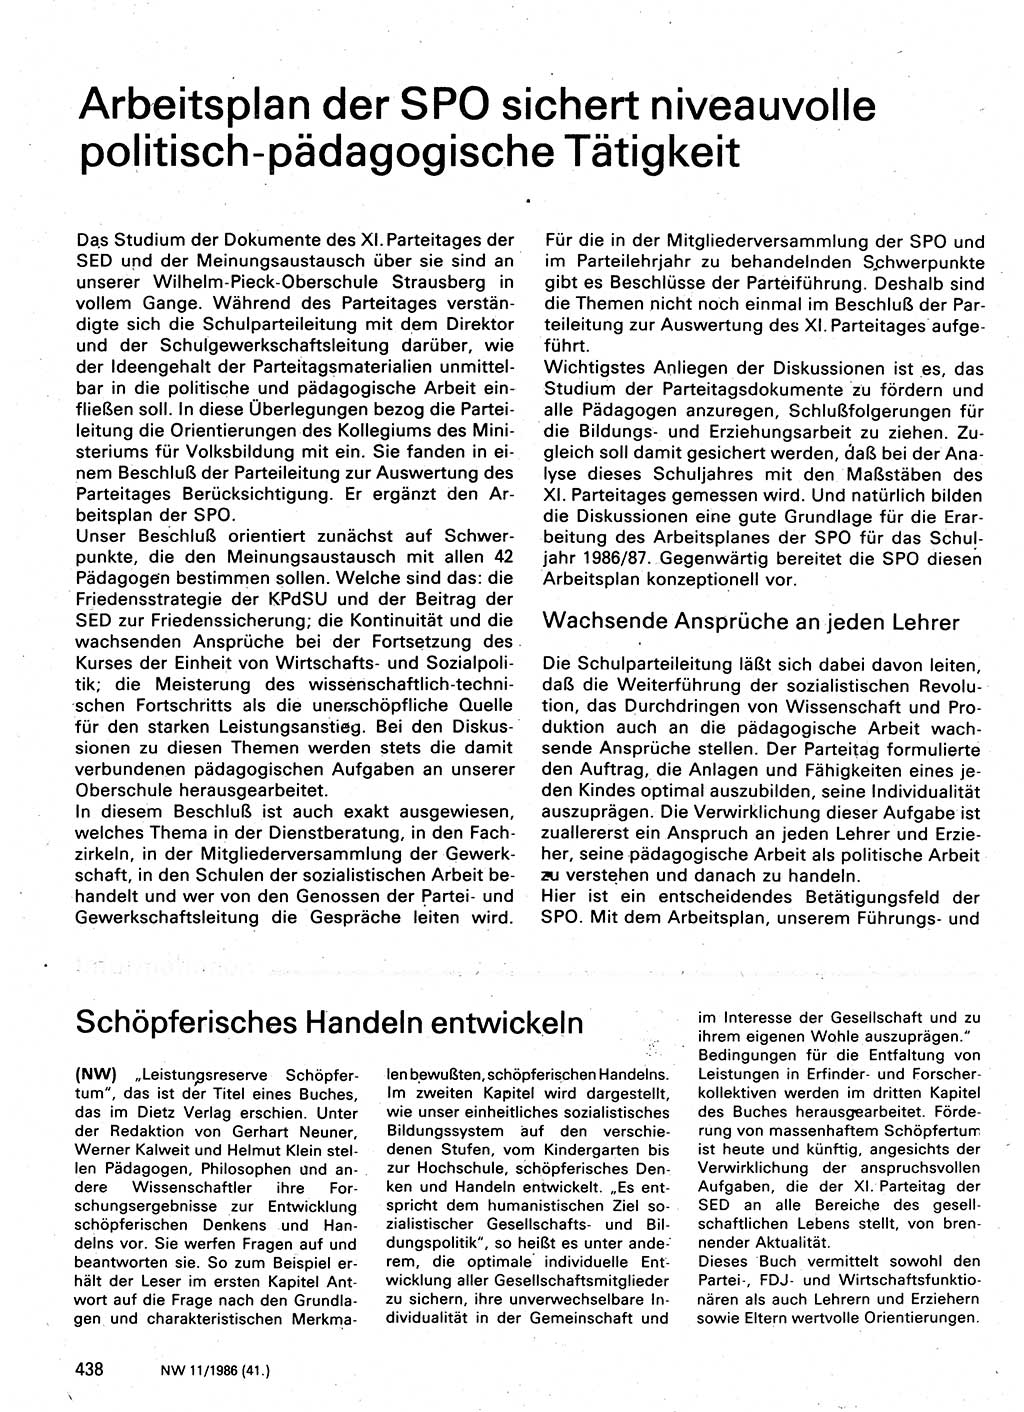 Neuer Weg (NW), Organ des Zentralkomitees (ZK) der SED (Sozialistische Einheitspartei Deutschlands) für Fragen des Parteilebens, 41. Jahrgang [Deutsche Demokratische Republik (DDR)] 1986, Seite 438 (NW ZK SED DDR 1986, S. 438)